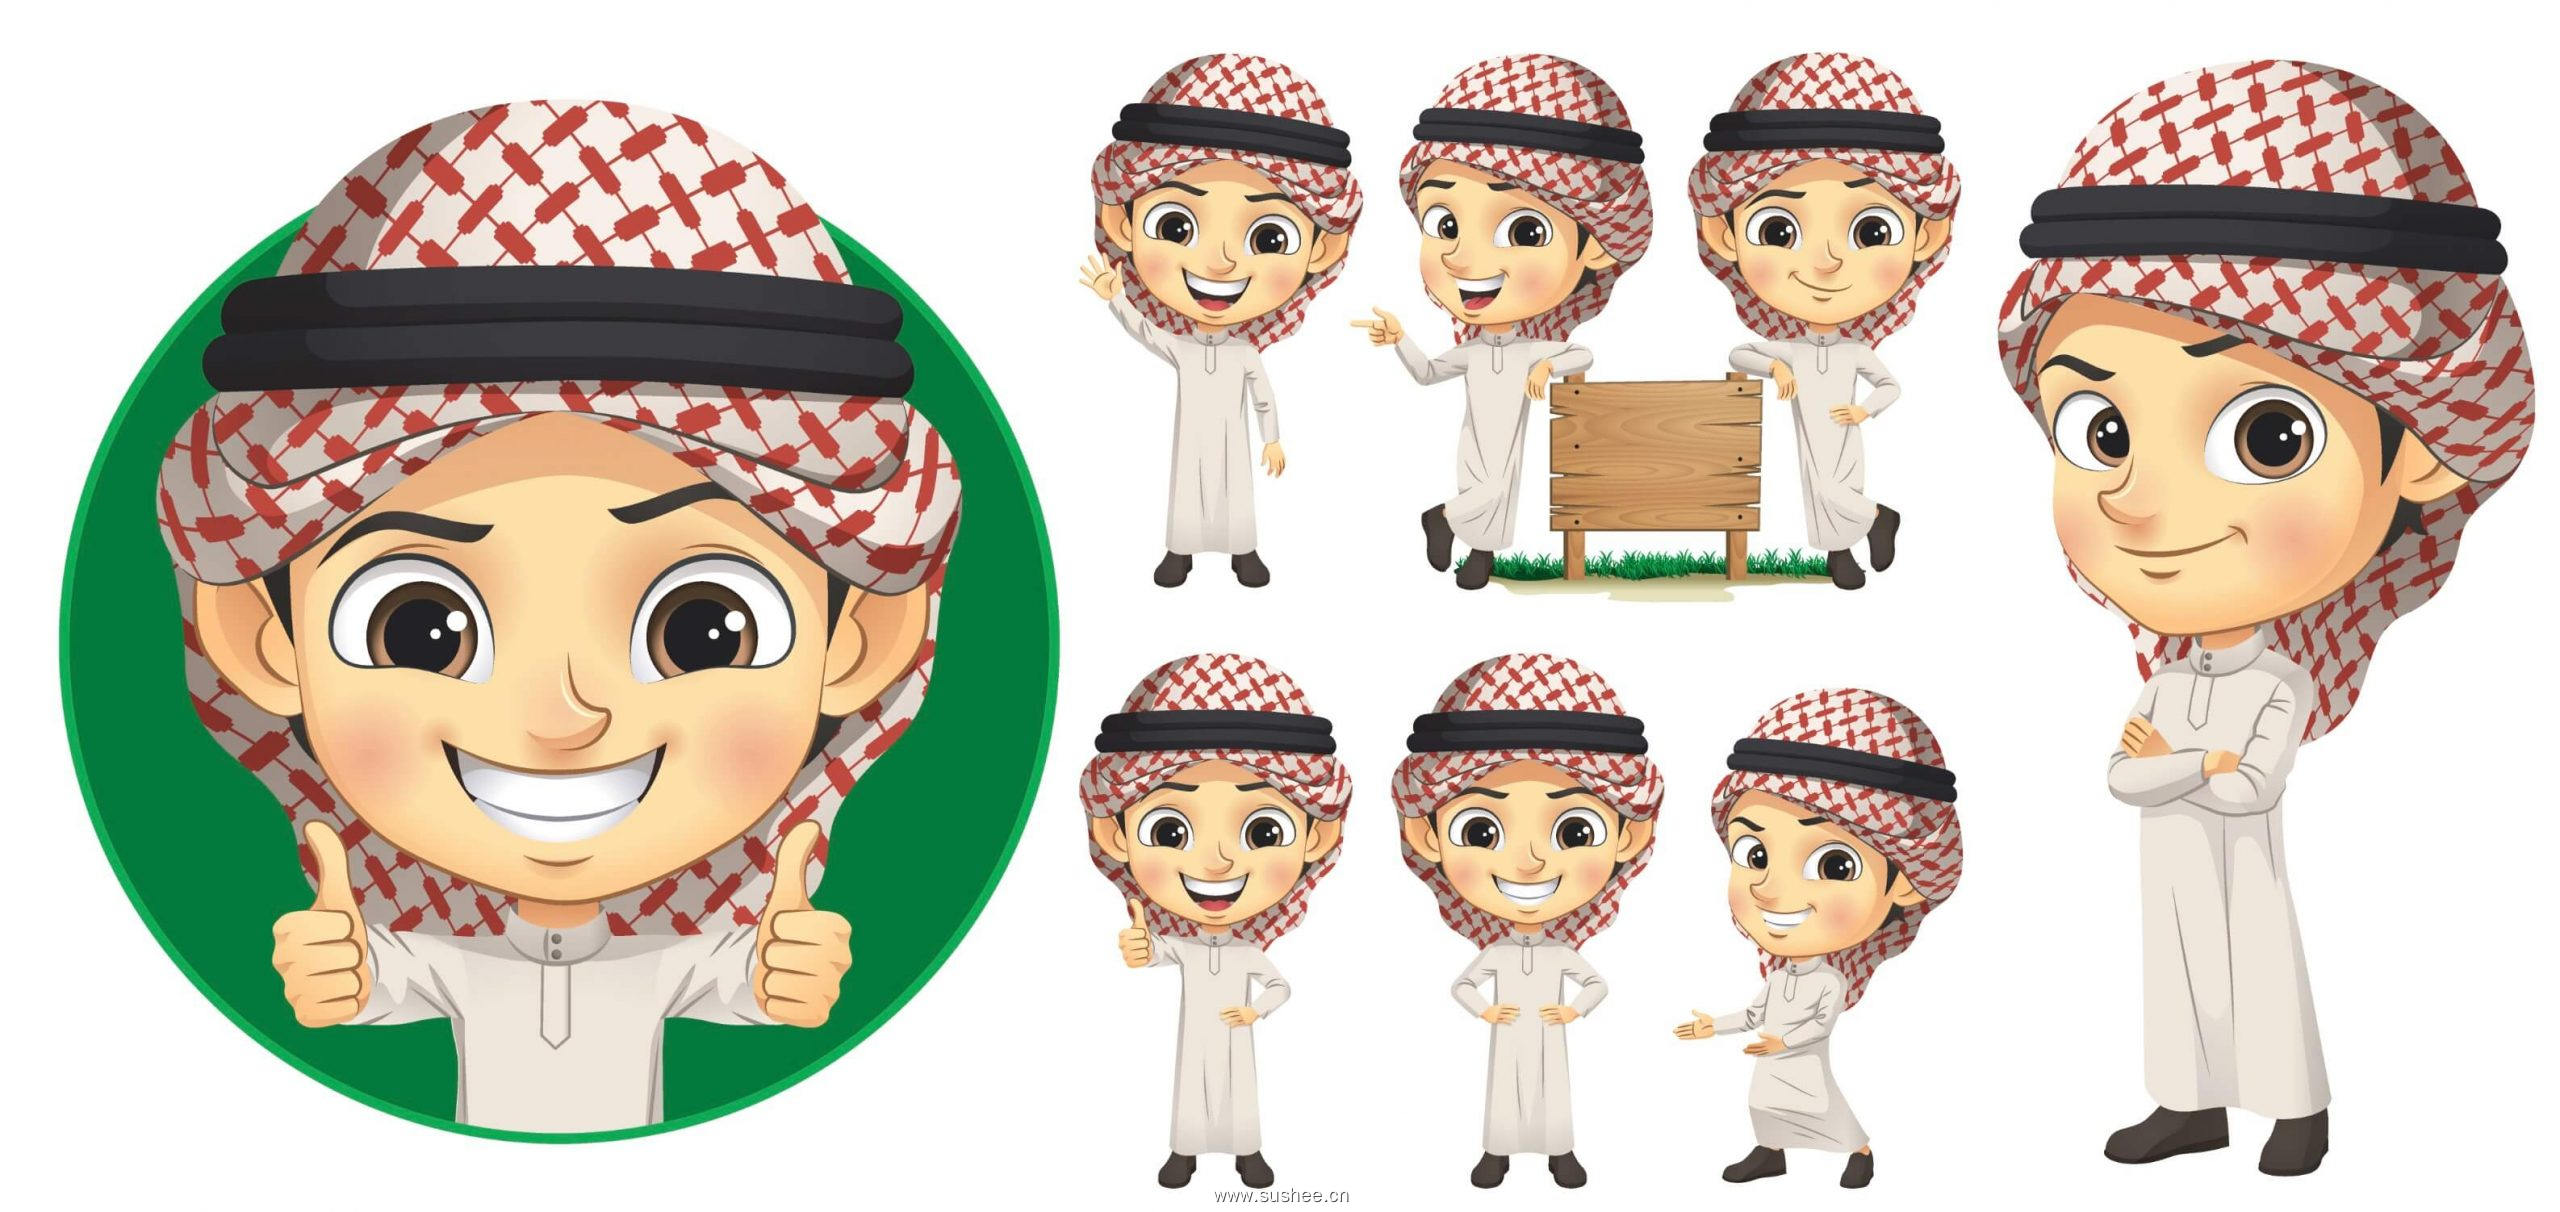 阿拉伯男孩矢量字符图案形象设计Vector arab boy character set插图